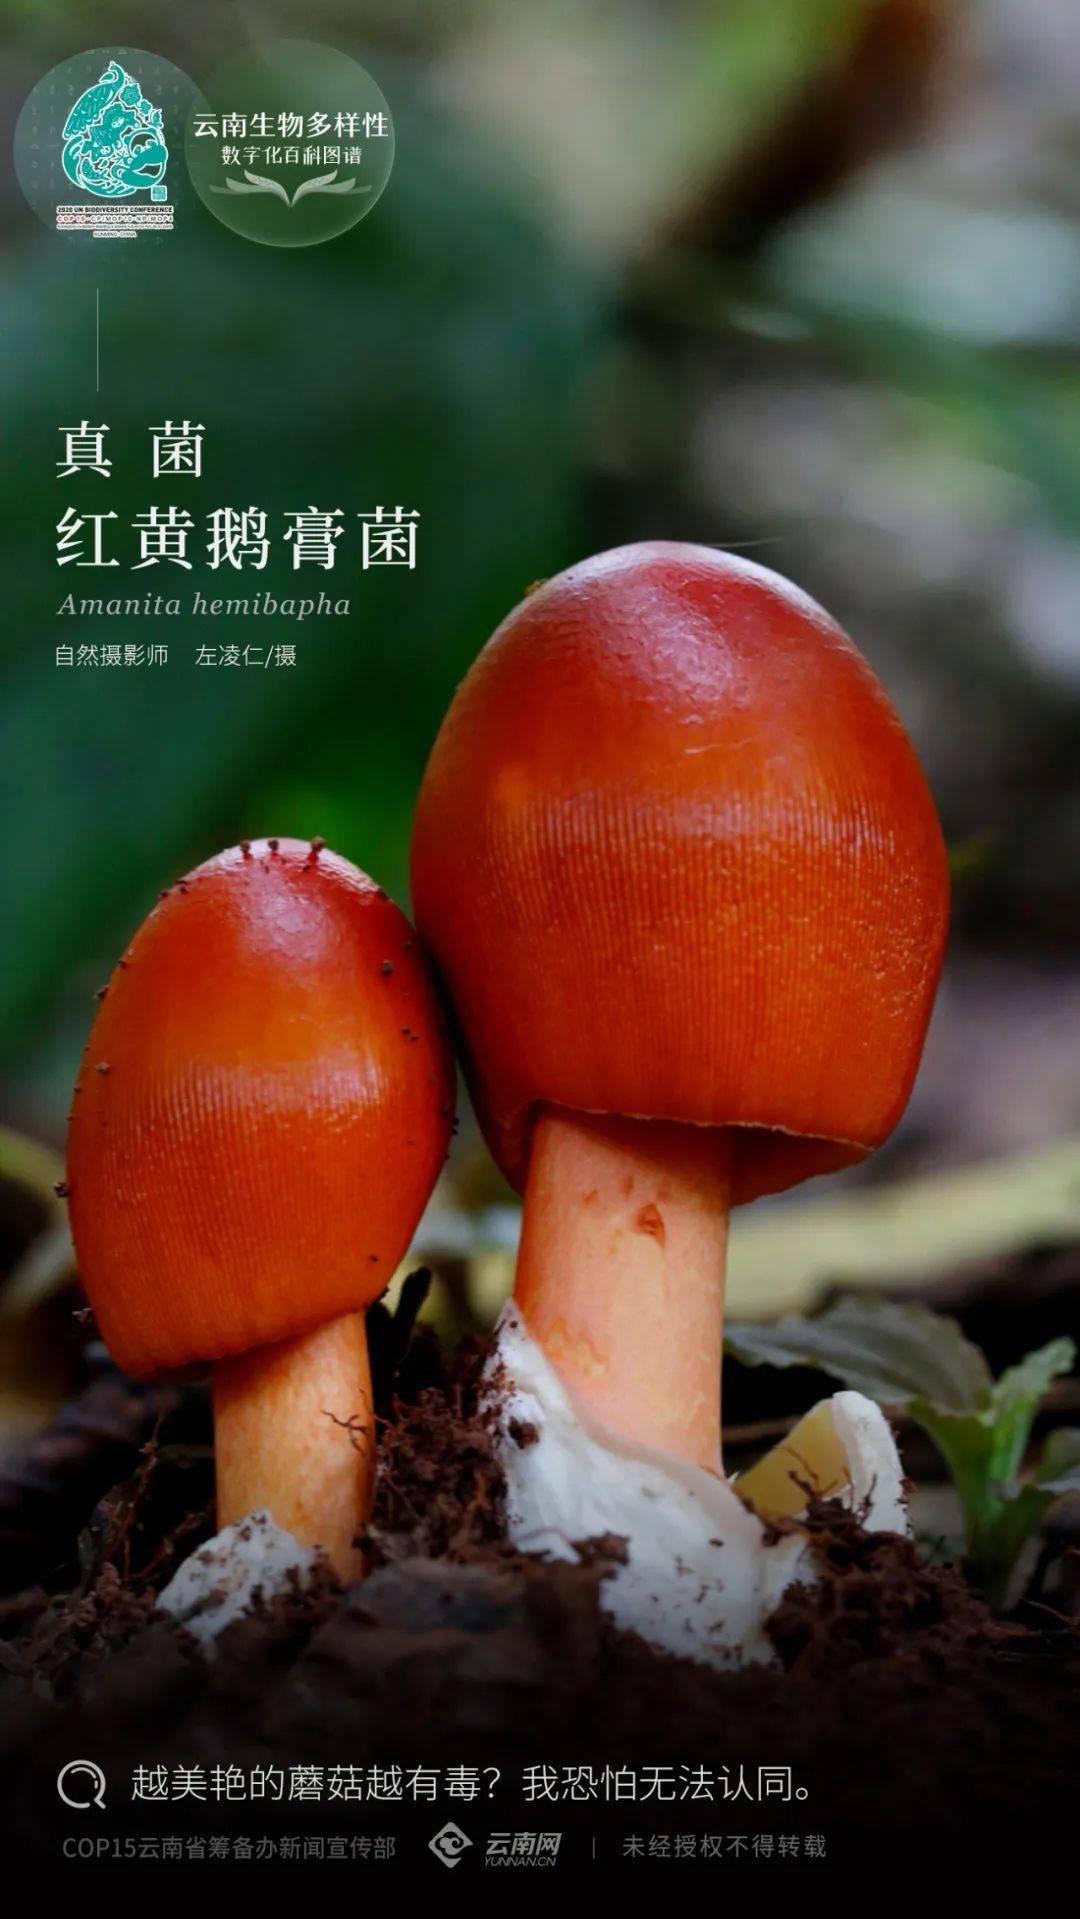 【云南生物多样性数字化百科图谱】真菌·红黄鹅膏菌:集美艳和美味于